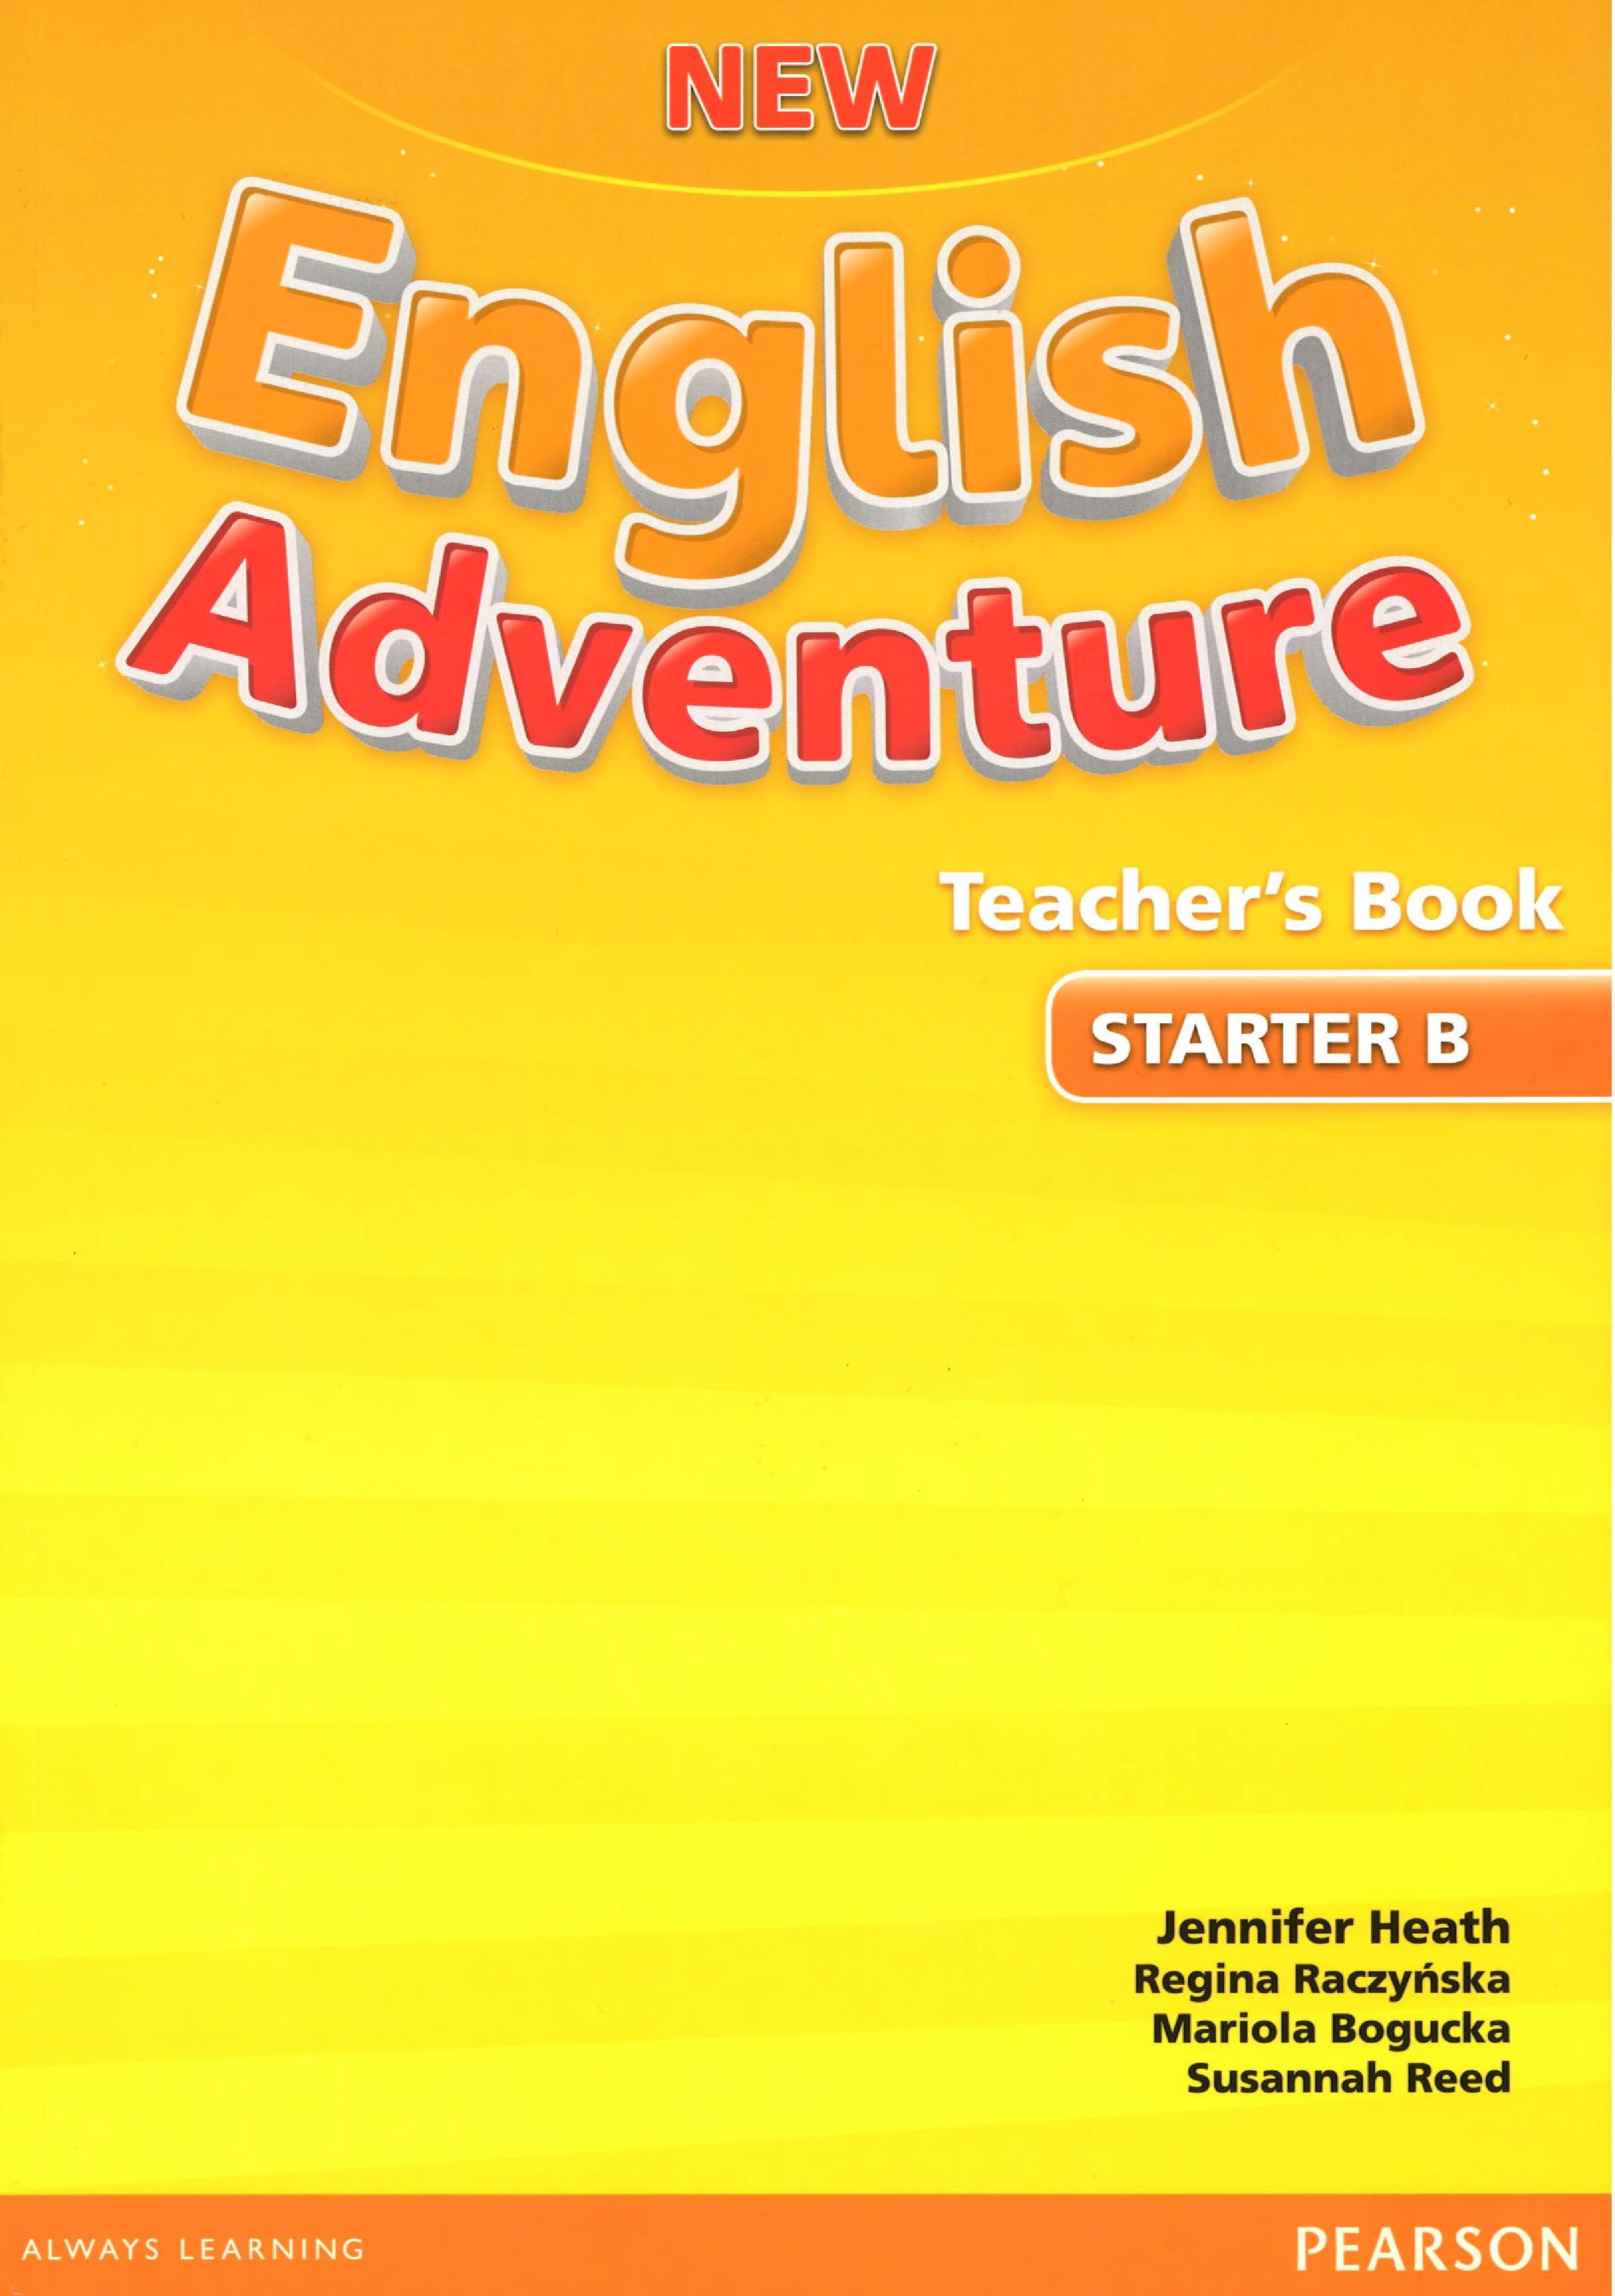 Nea Starter B Teachers Book